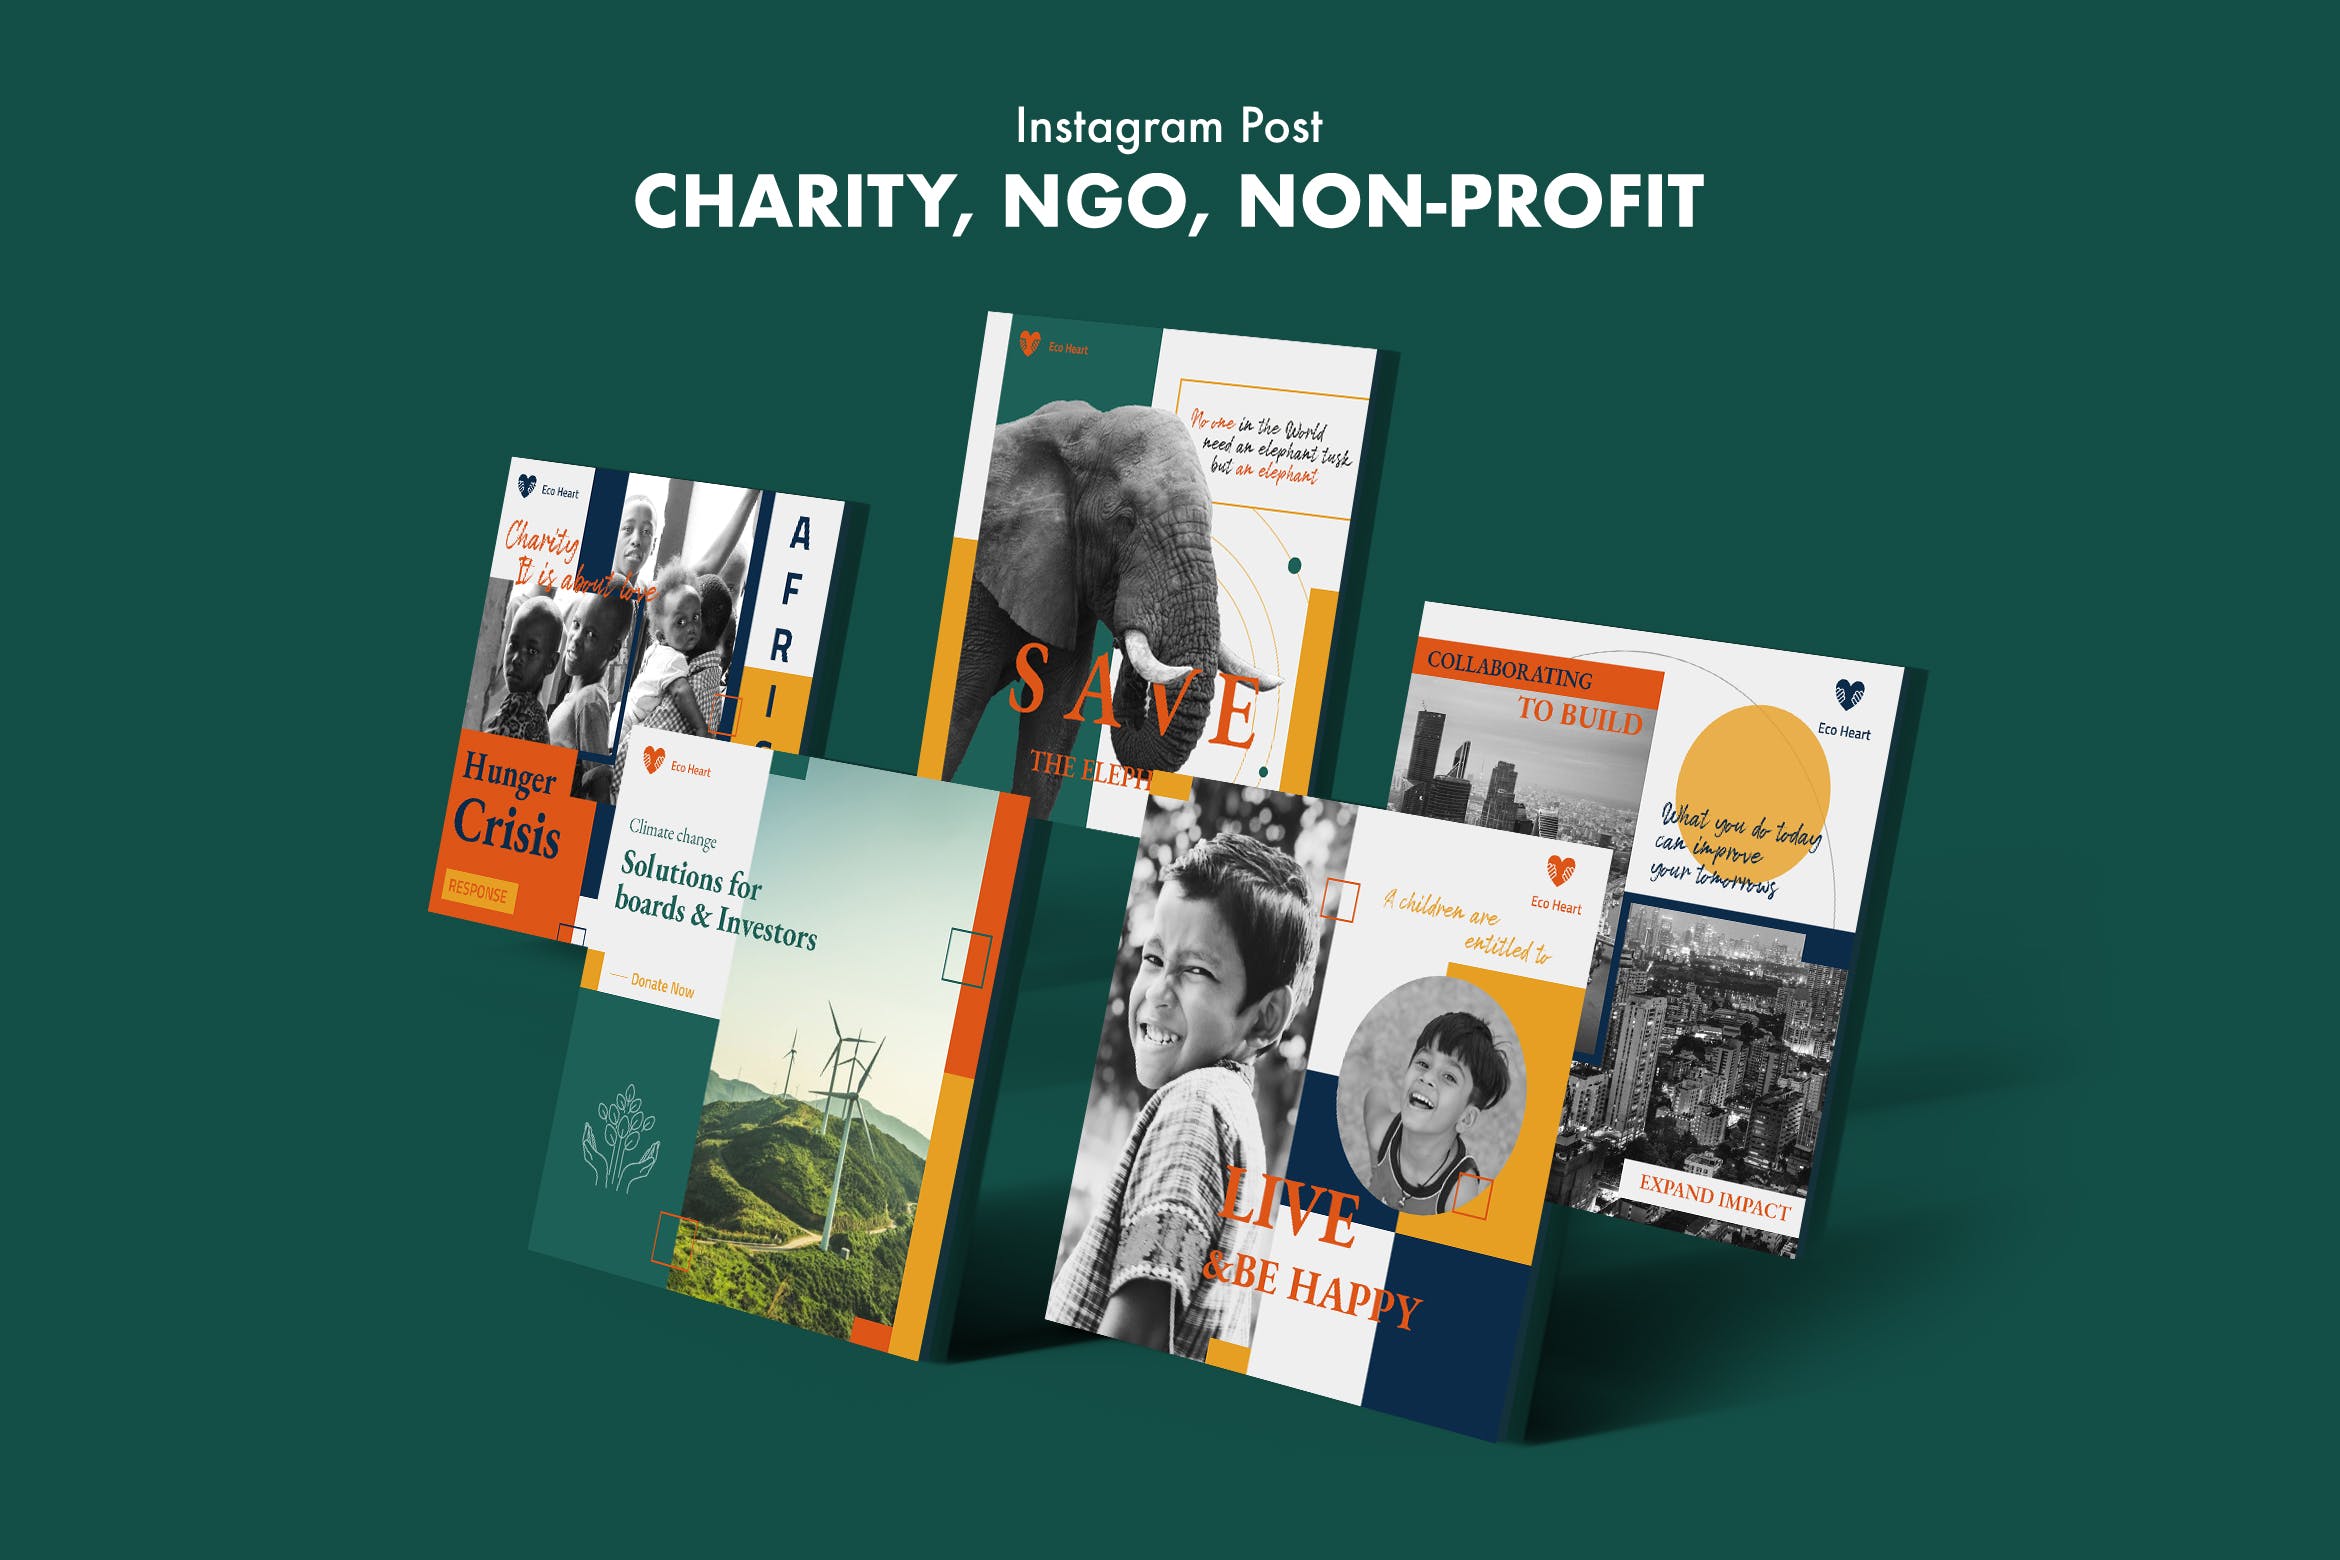 慈善机构 非政府组织 非营利组织Instagram社交素材帖子模板 Charity, NGO, Non-Profit Instagram Post设计素材模板